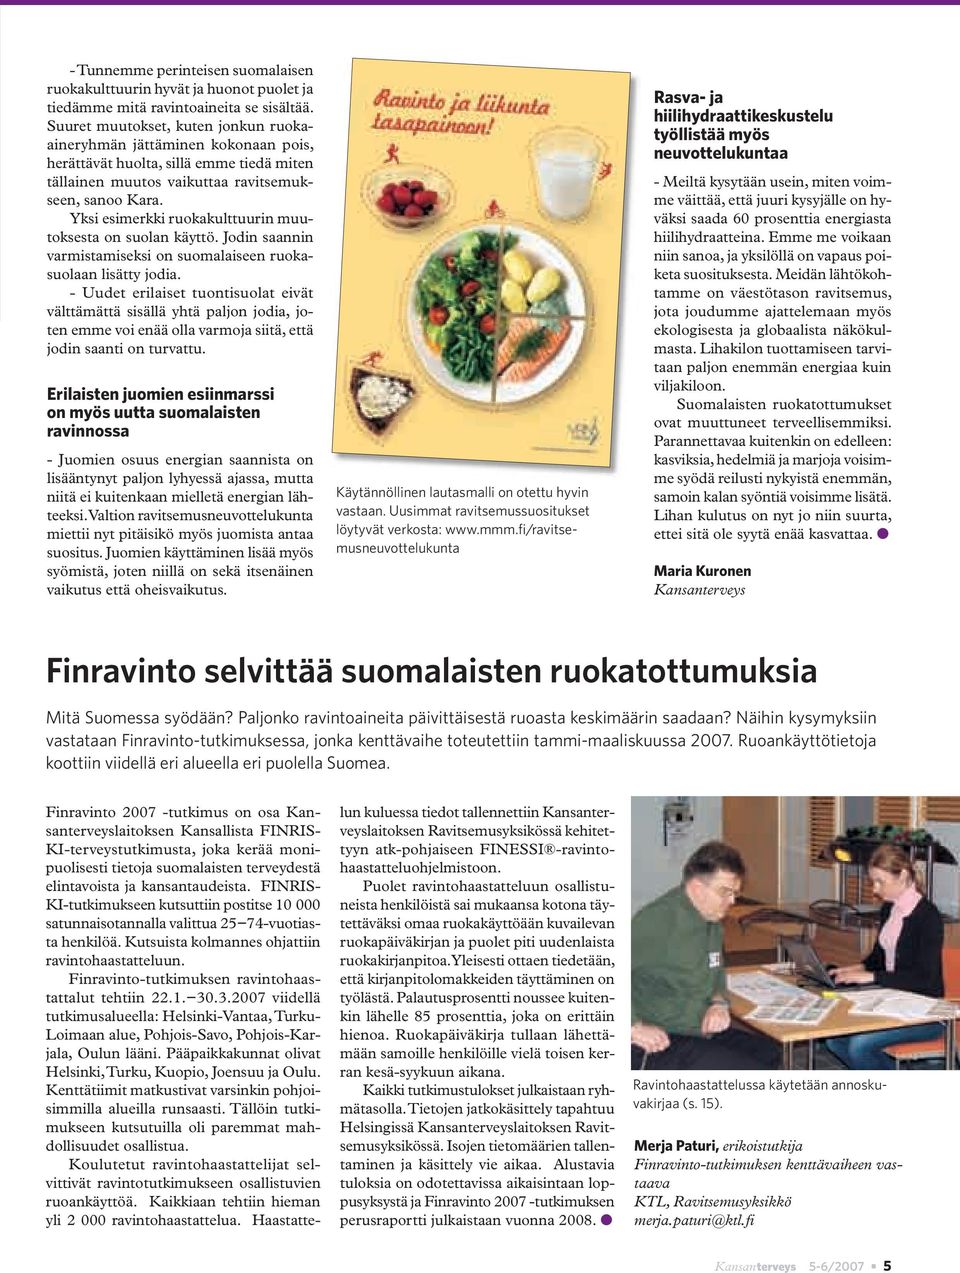 Yksi esimerkki ruokakulttuurin muutoksesta on suolan käyttö. Jodin saannin varmistamiseksi on suomalaiseen ruokasuolaan lisätty jodia.